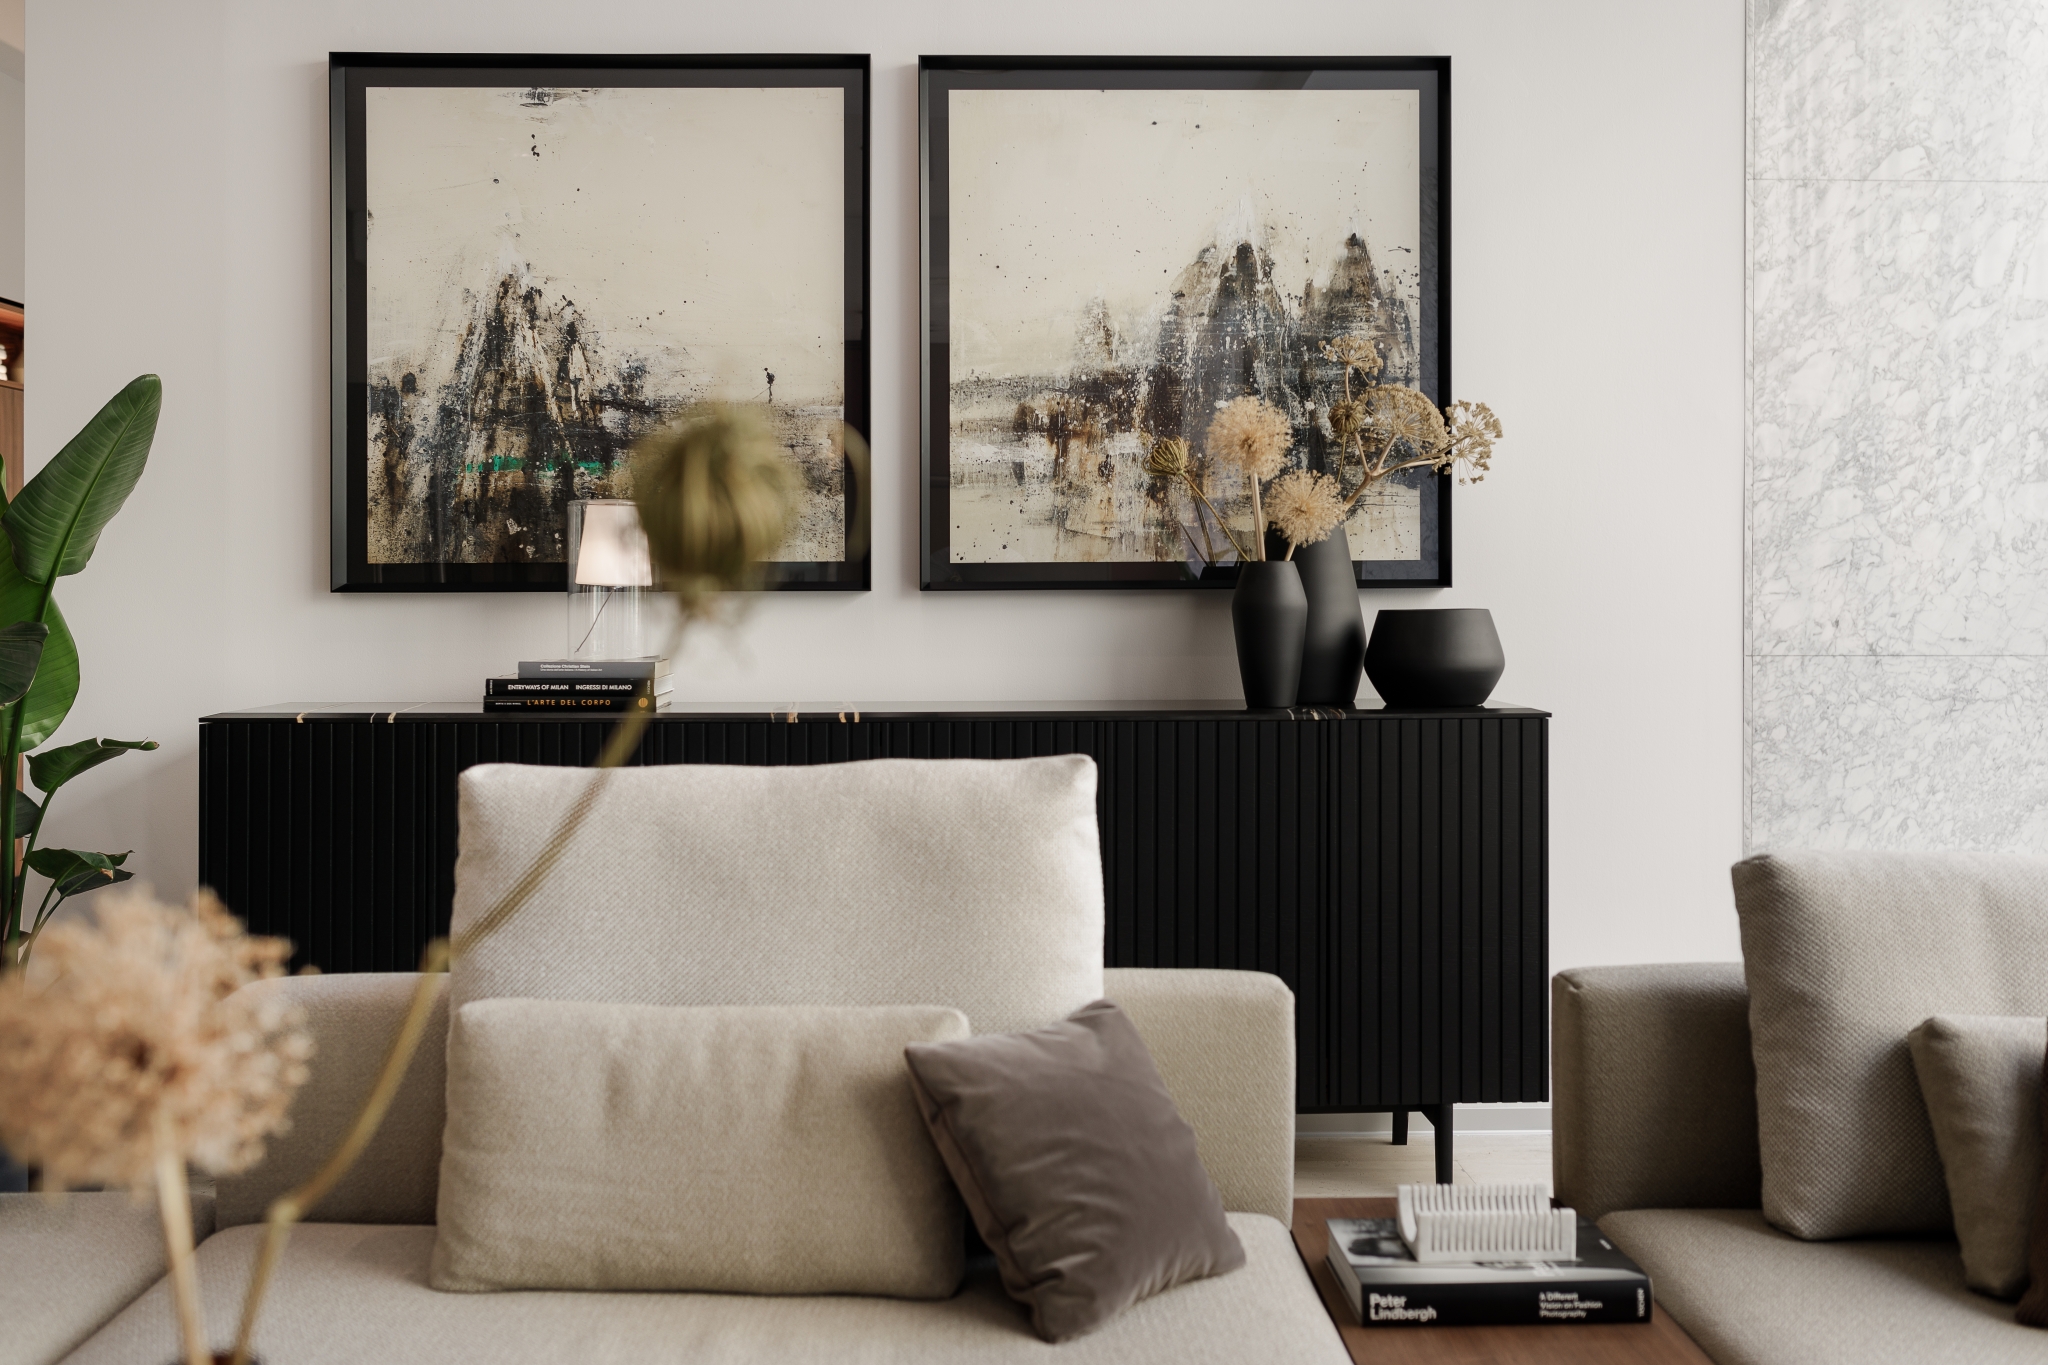 Moderne Wohnzimmereinrichtung mit neutraler Farbpalette und eleganten abstrakten Kunstwerken über einem eleganten schwarzen Sideboard, ergänzt durch gemütliche beige Sofas und geschmackvolle Dekorationselemente.